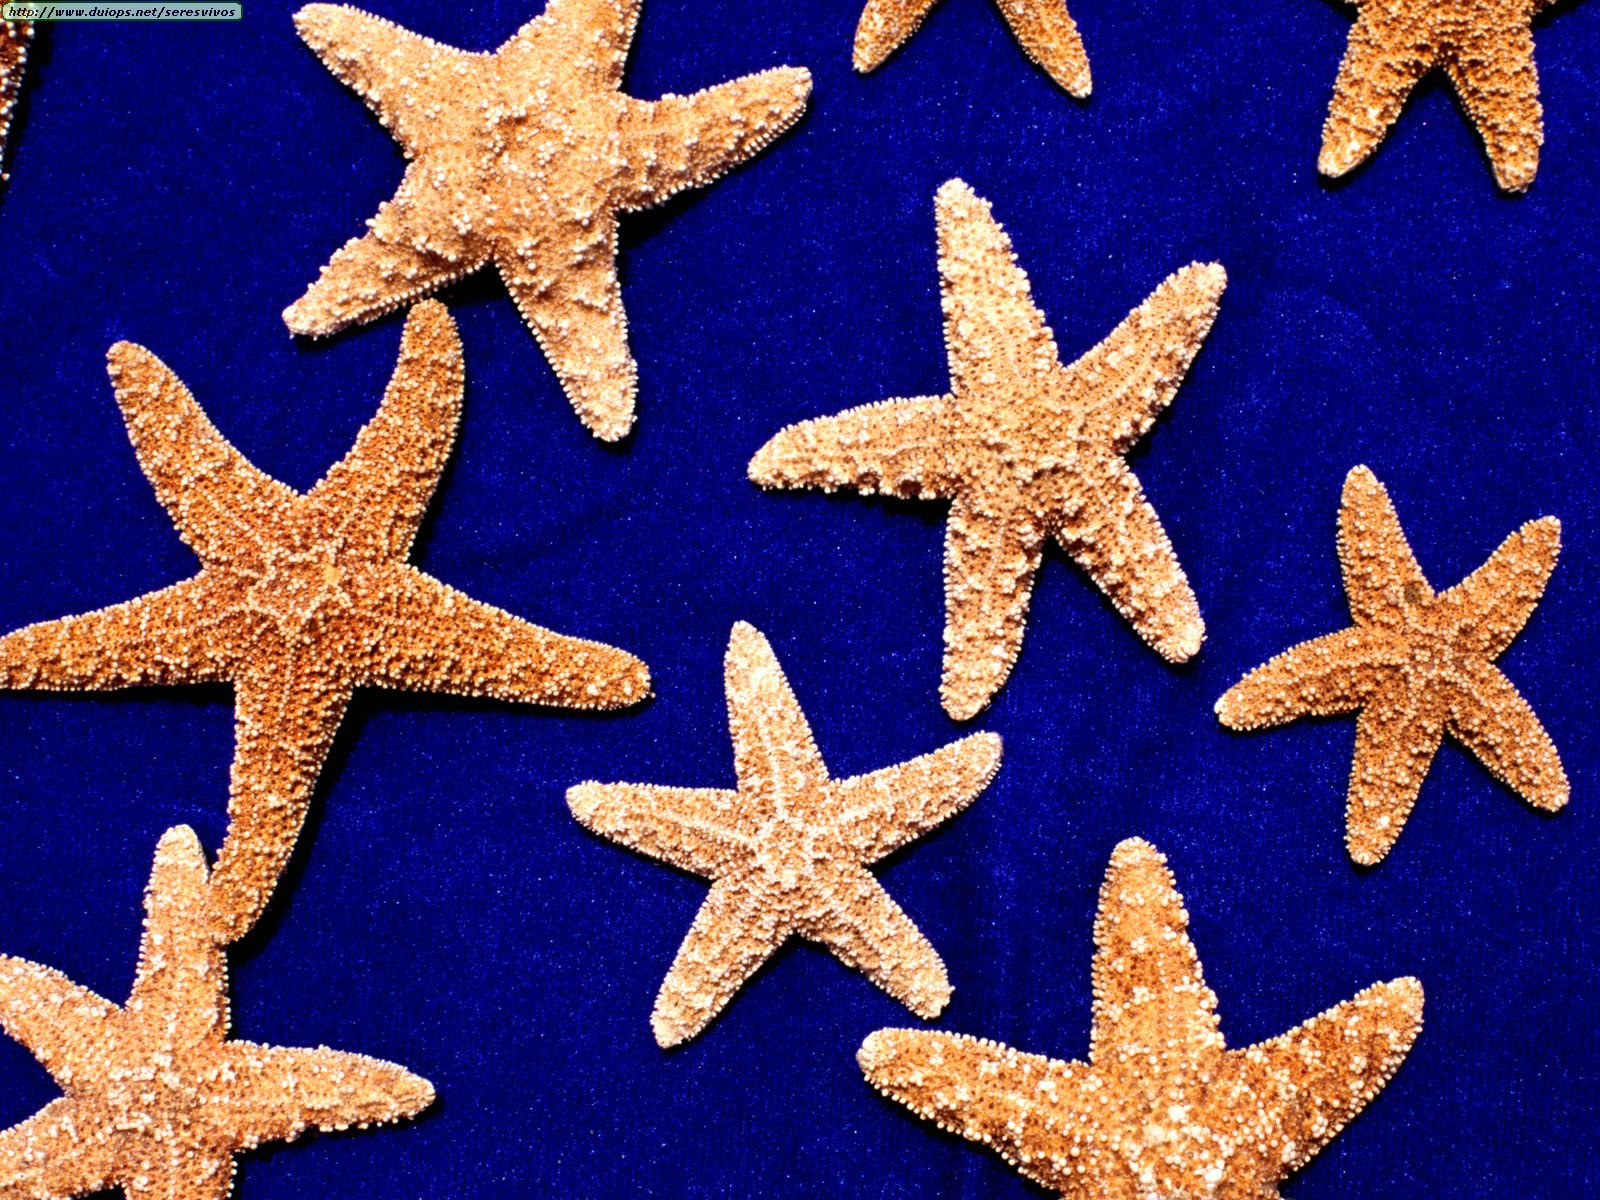 Estrellas de mar disecadas